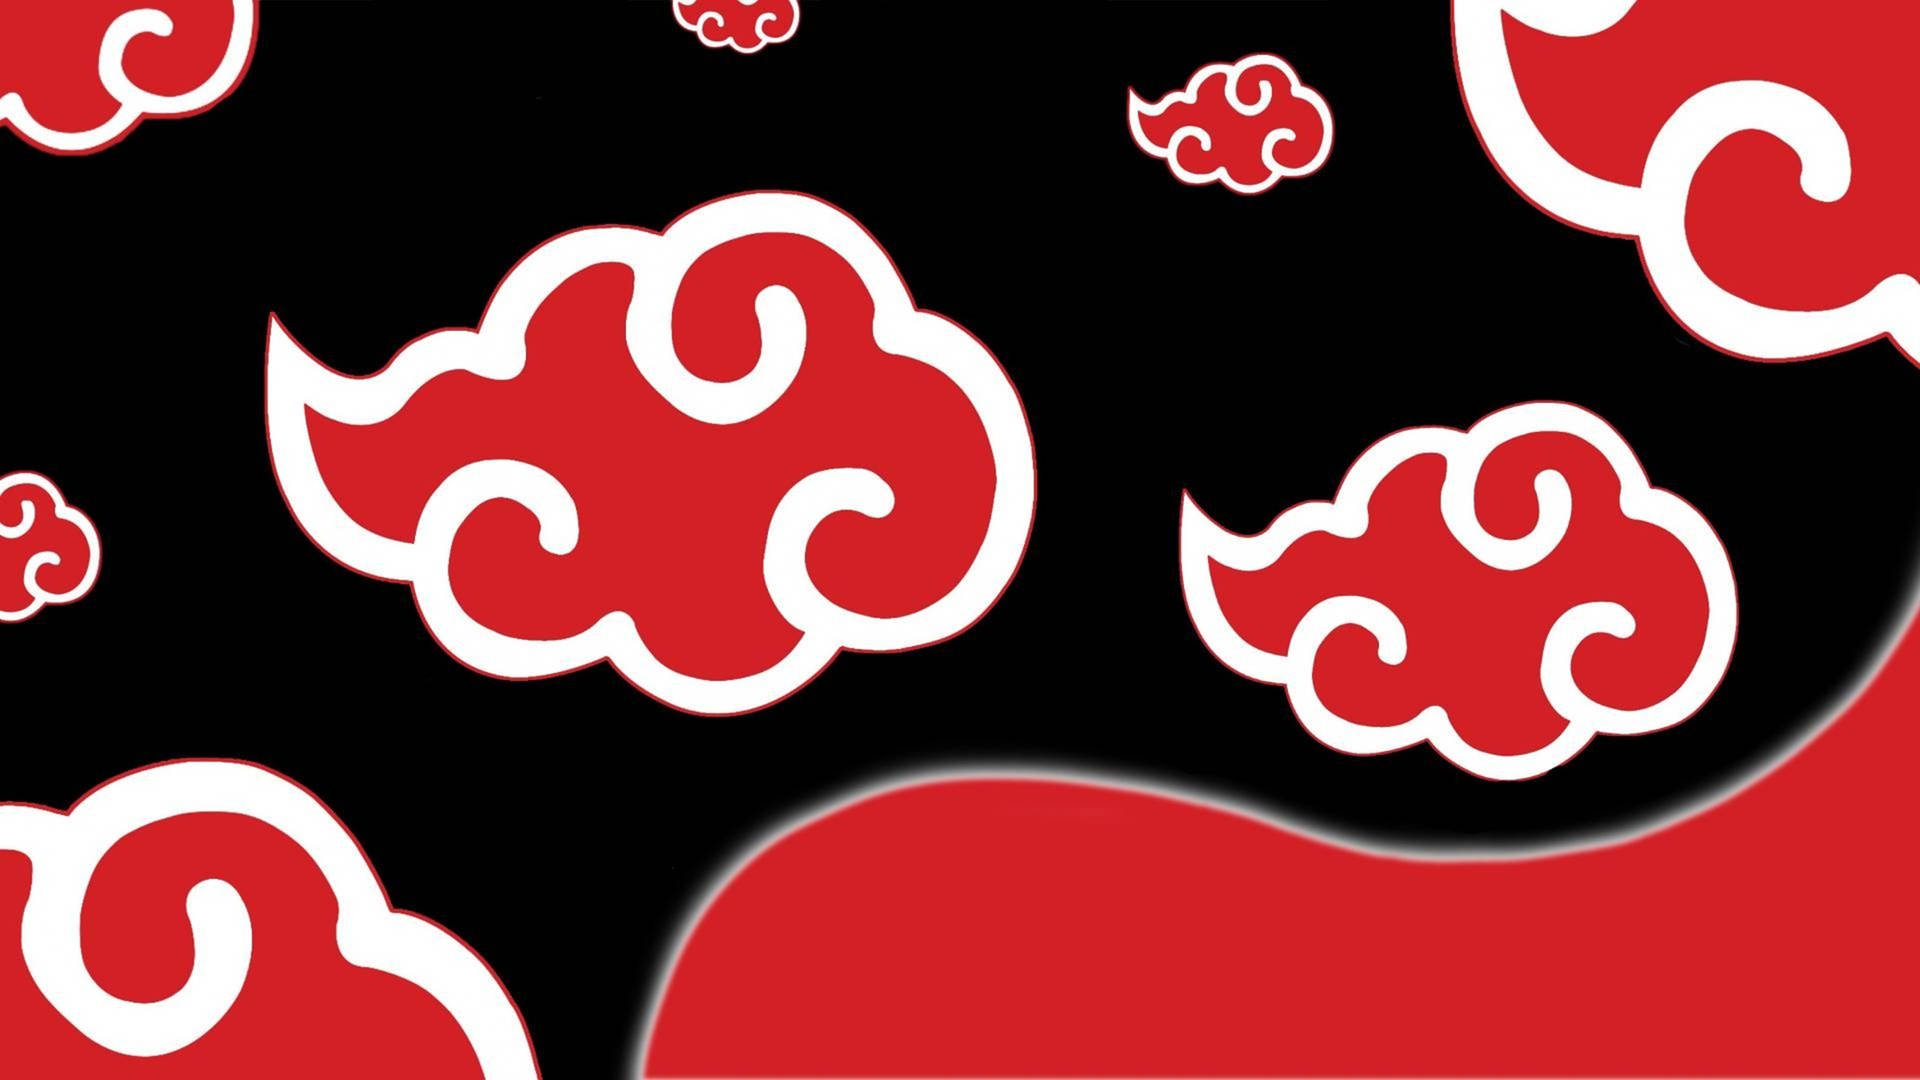 Akatsuki Logo Stylized Red Clouds Wallpaper